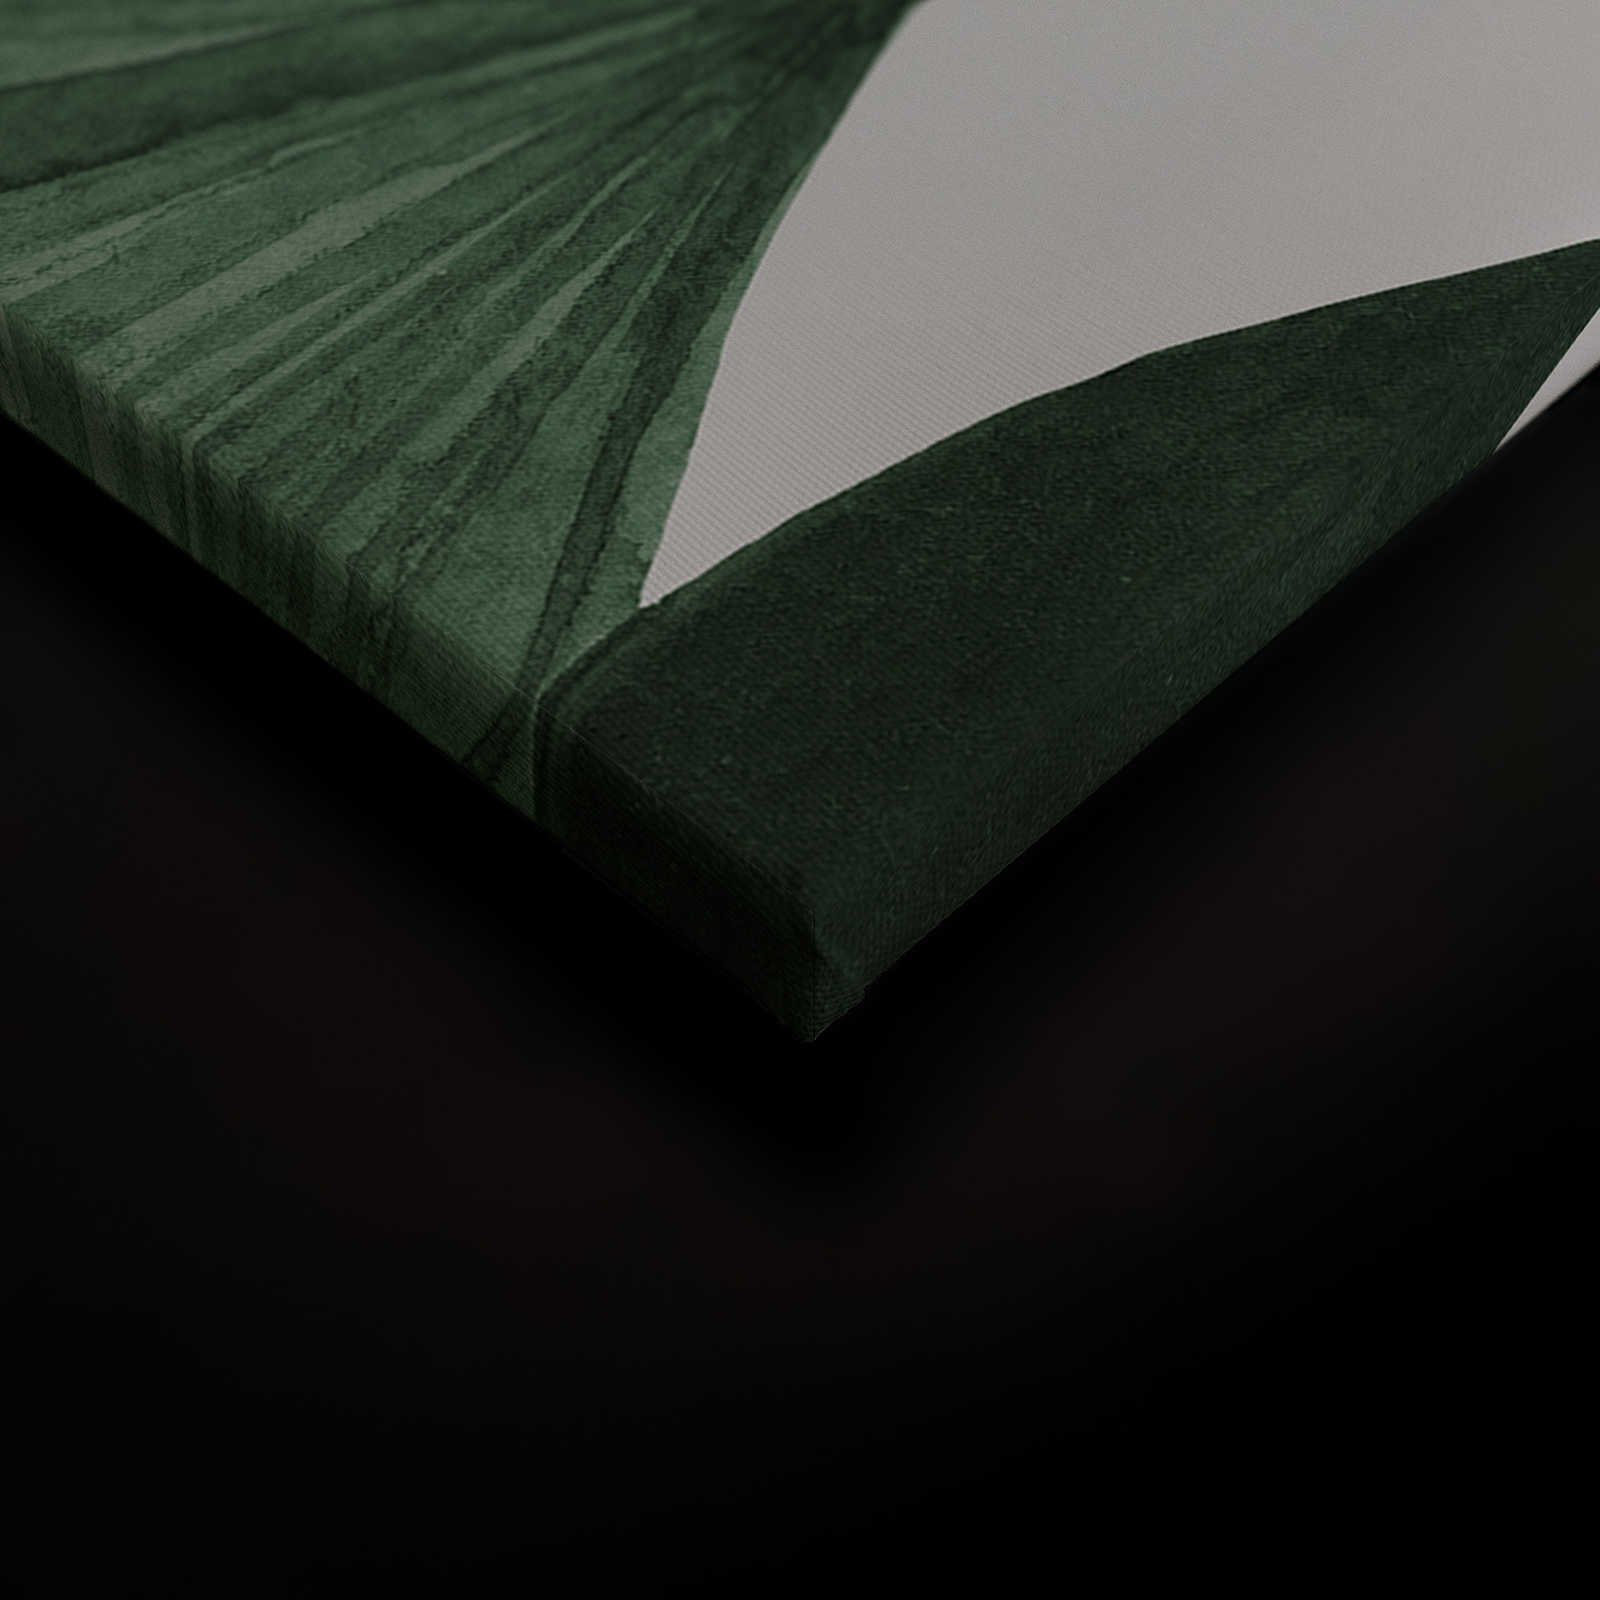             Quadro su tela con grandi foglie di palma a raggiera - 0,90 m x 0,60 m
        